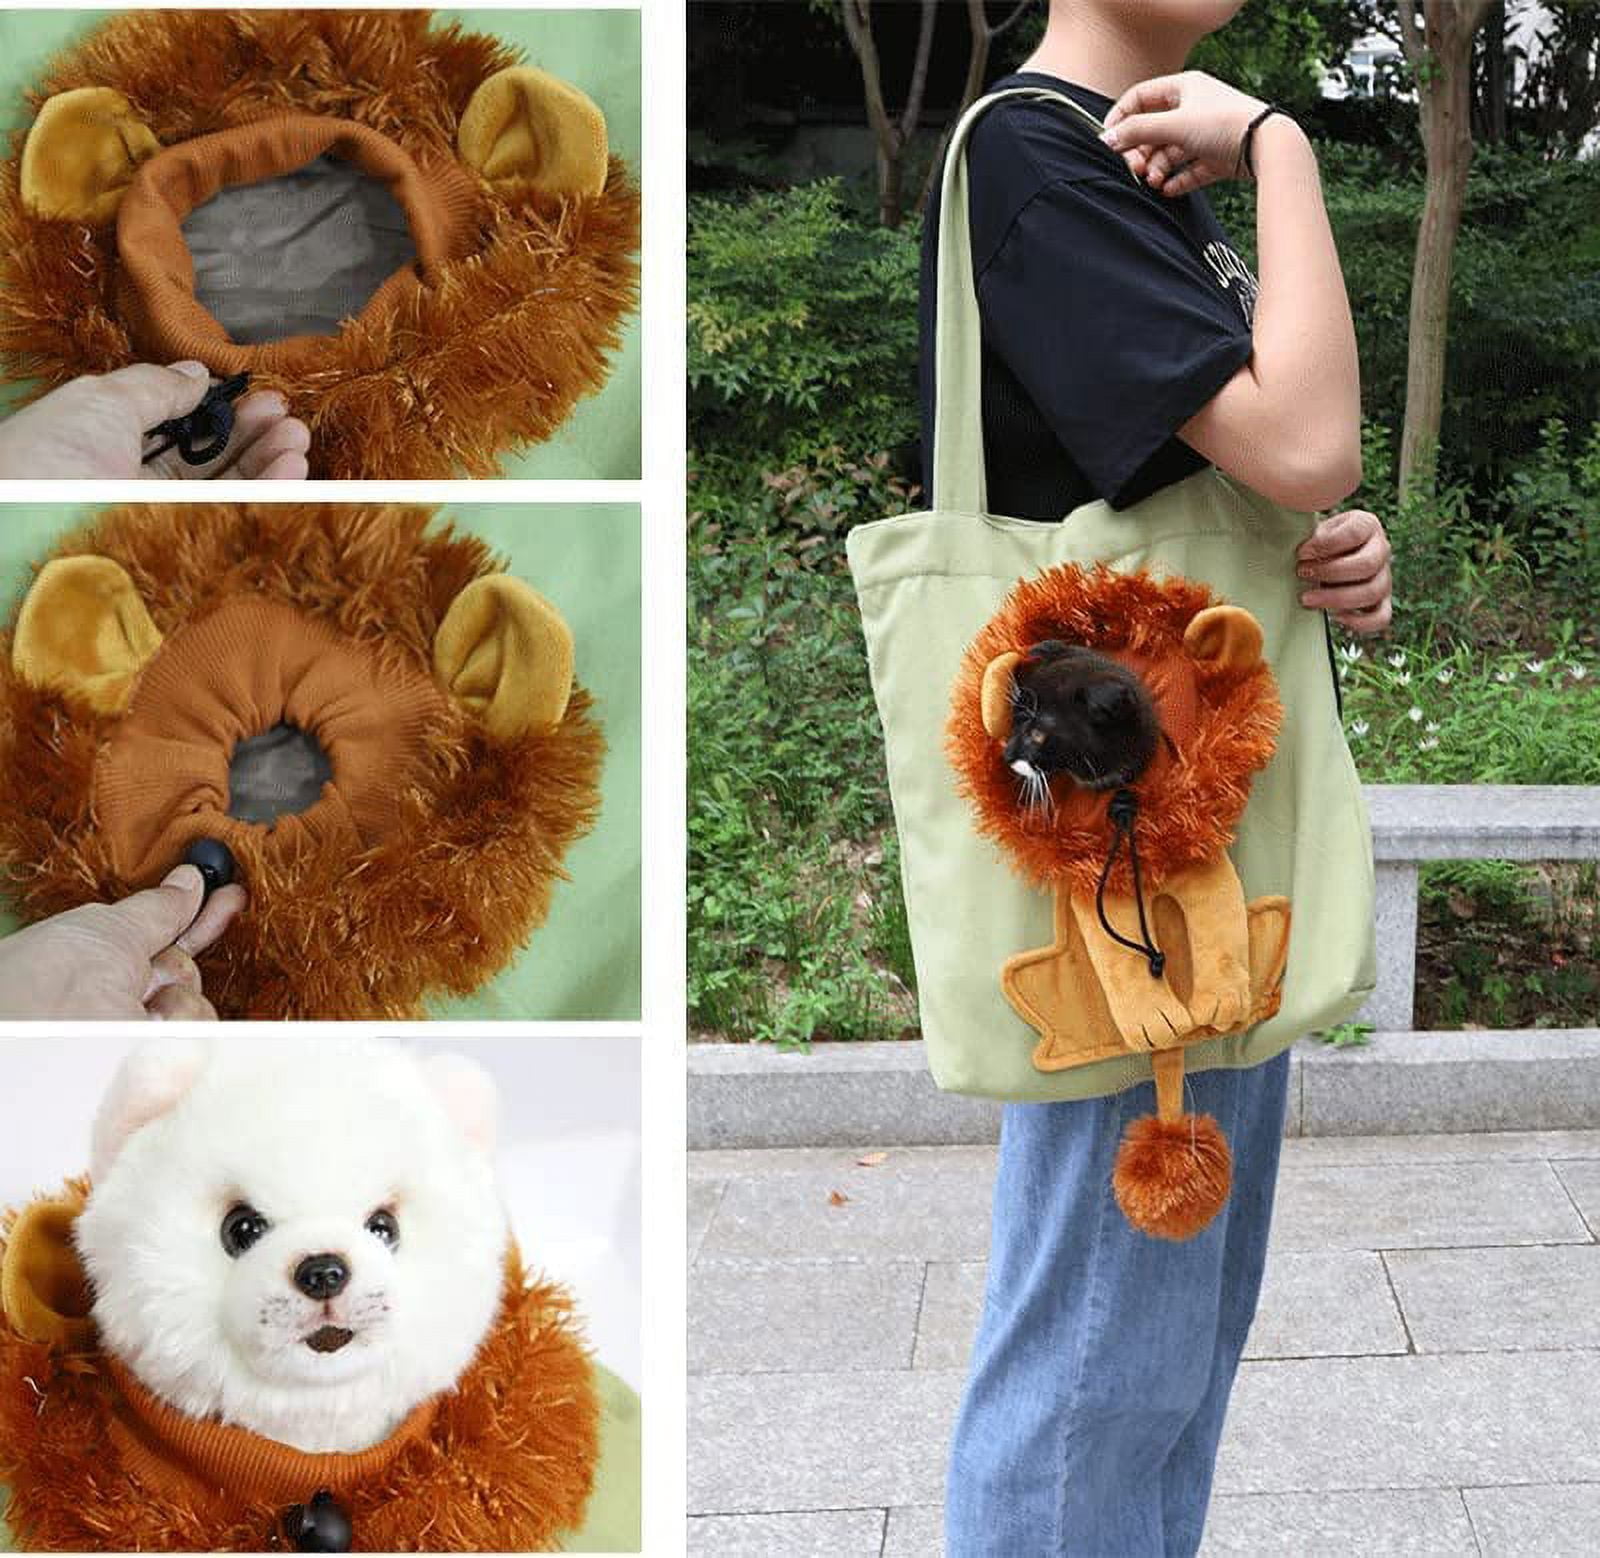  Plcnn Pet Canvas Shoulder Bag, Cute Lion-Shaped Small Dog  Carrier Portable Pet Carrying Chest Bag for Small Dogs and Cats Pet  Supplies : Pet Supplies